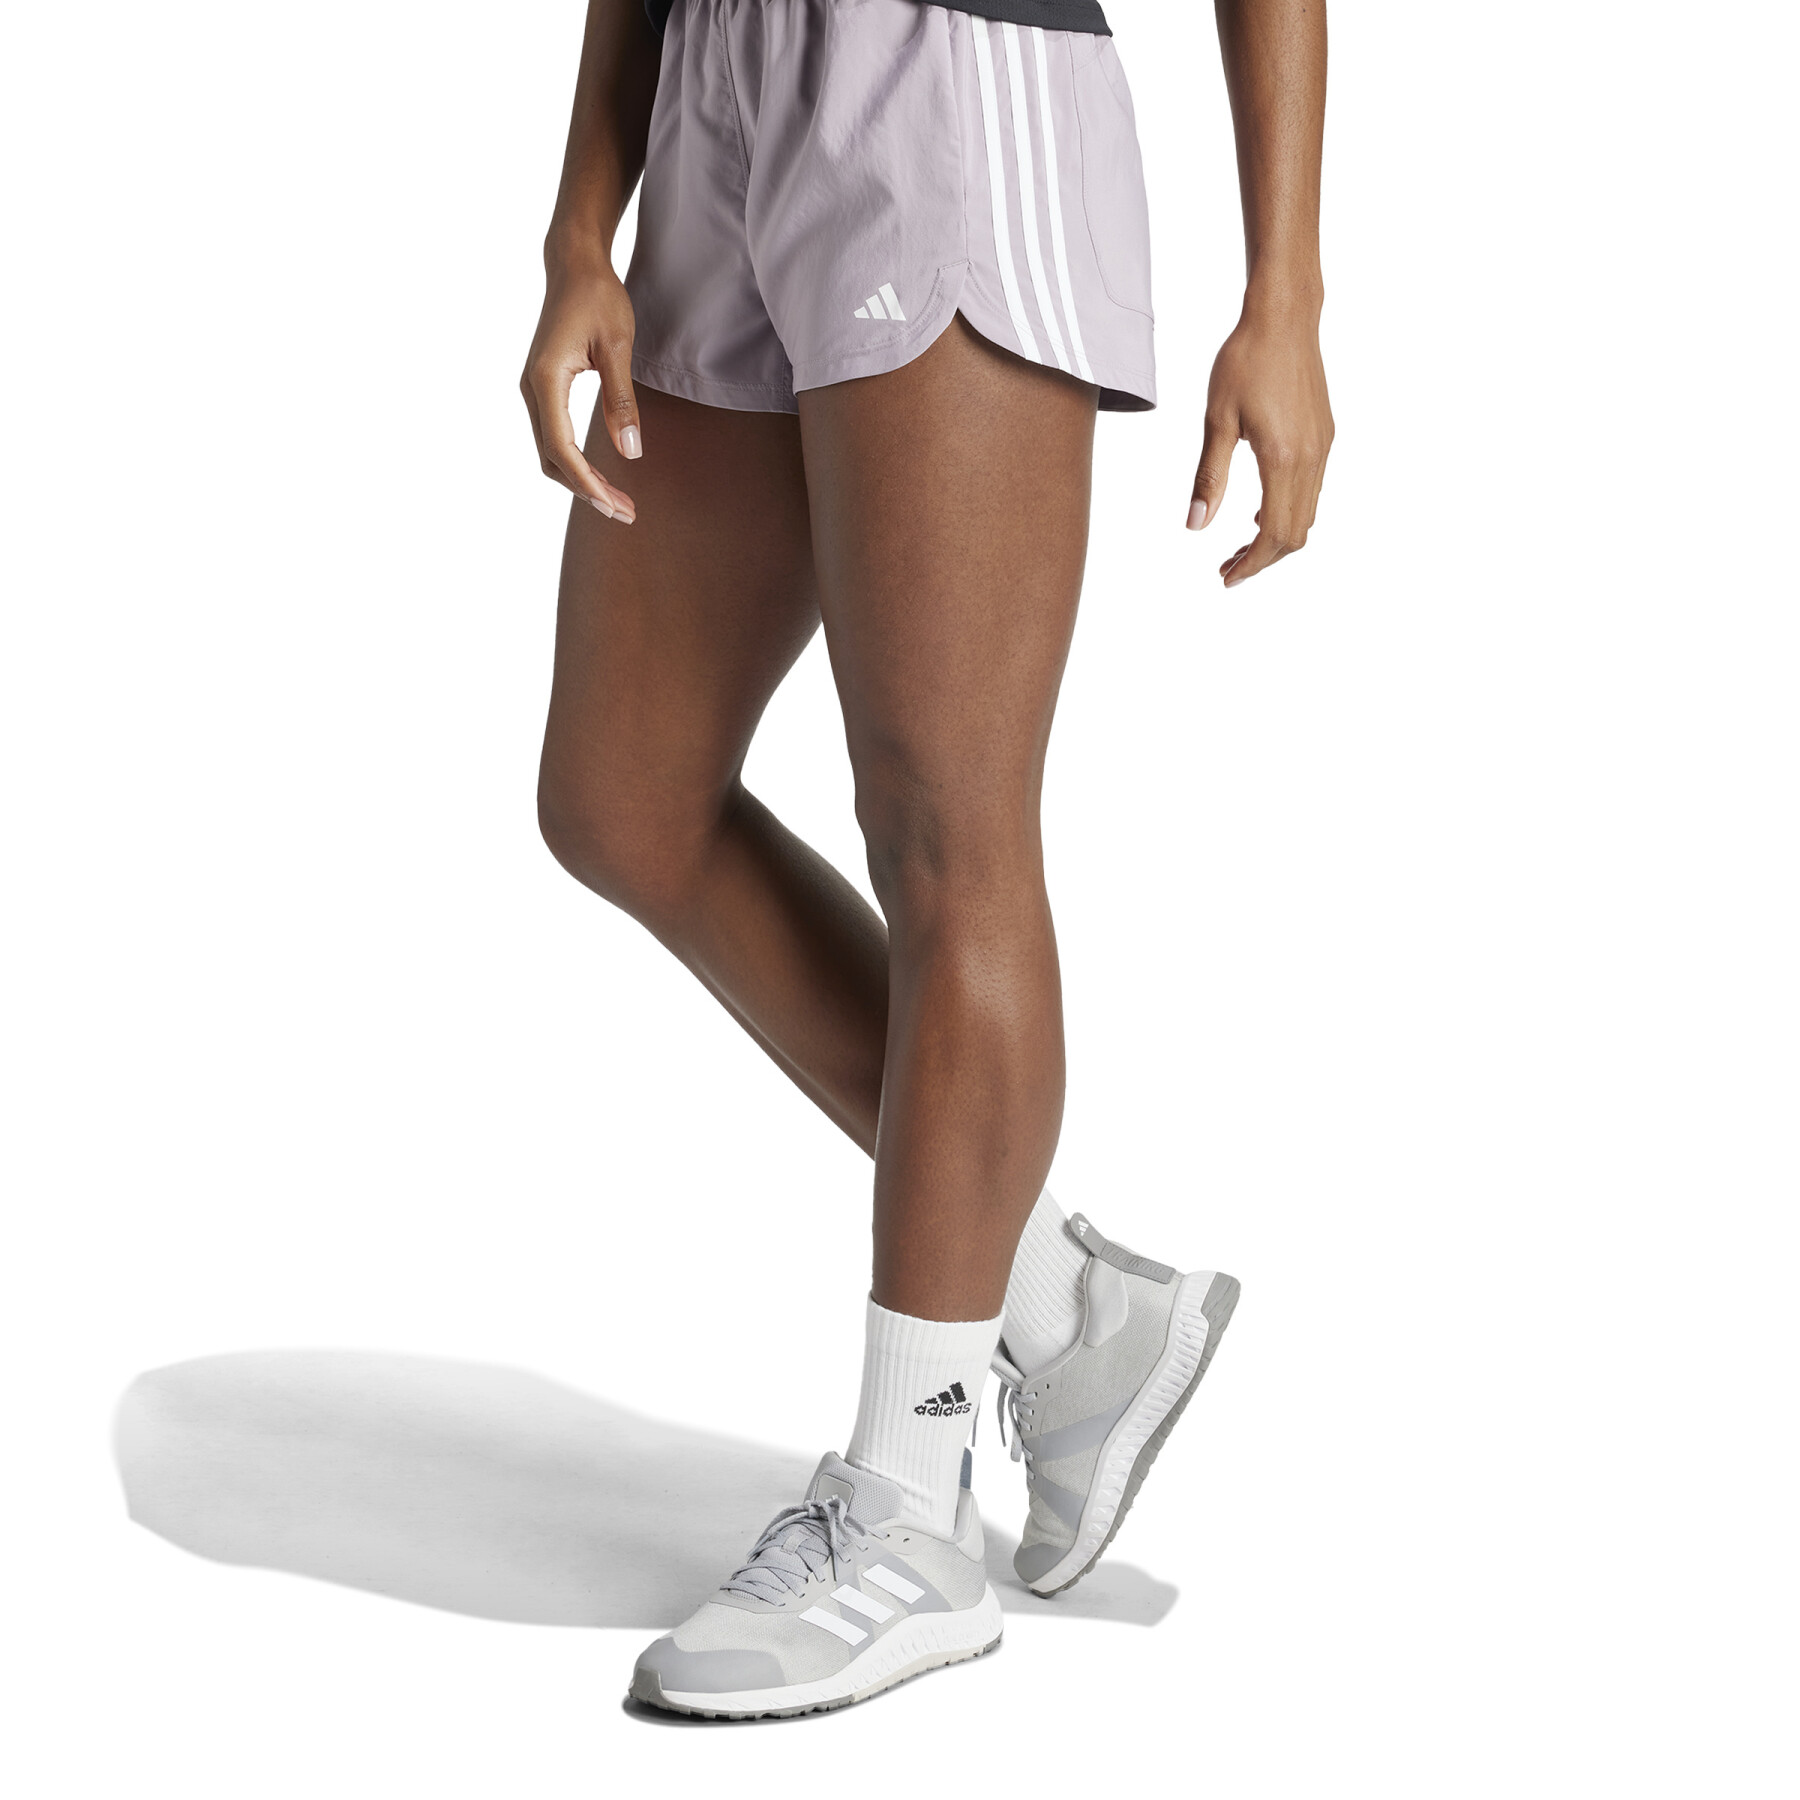 Women's high waist shorts adidas Pacer 3 Stripes